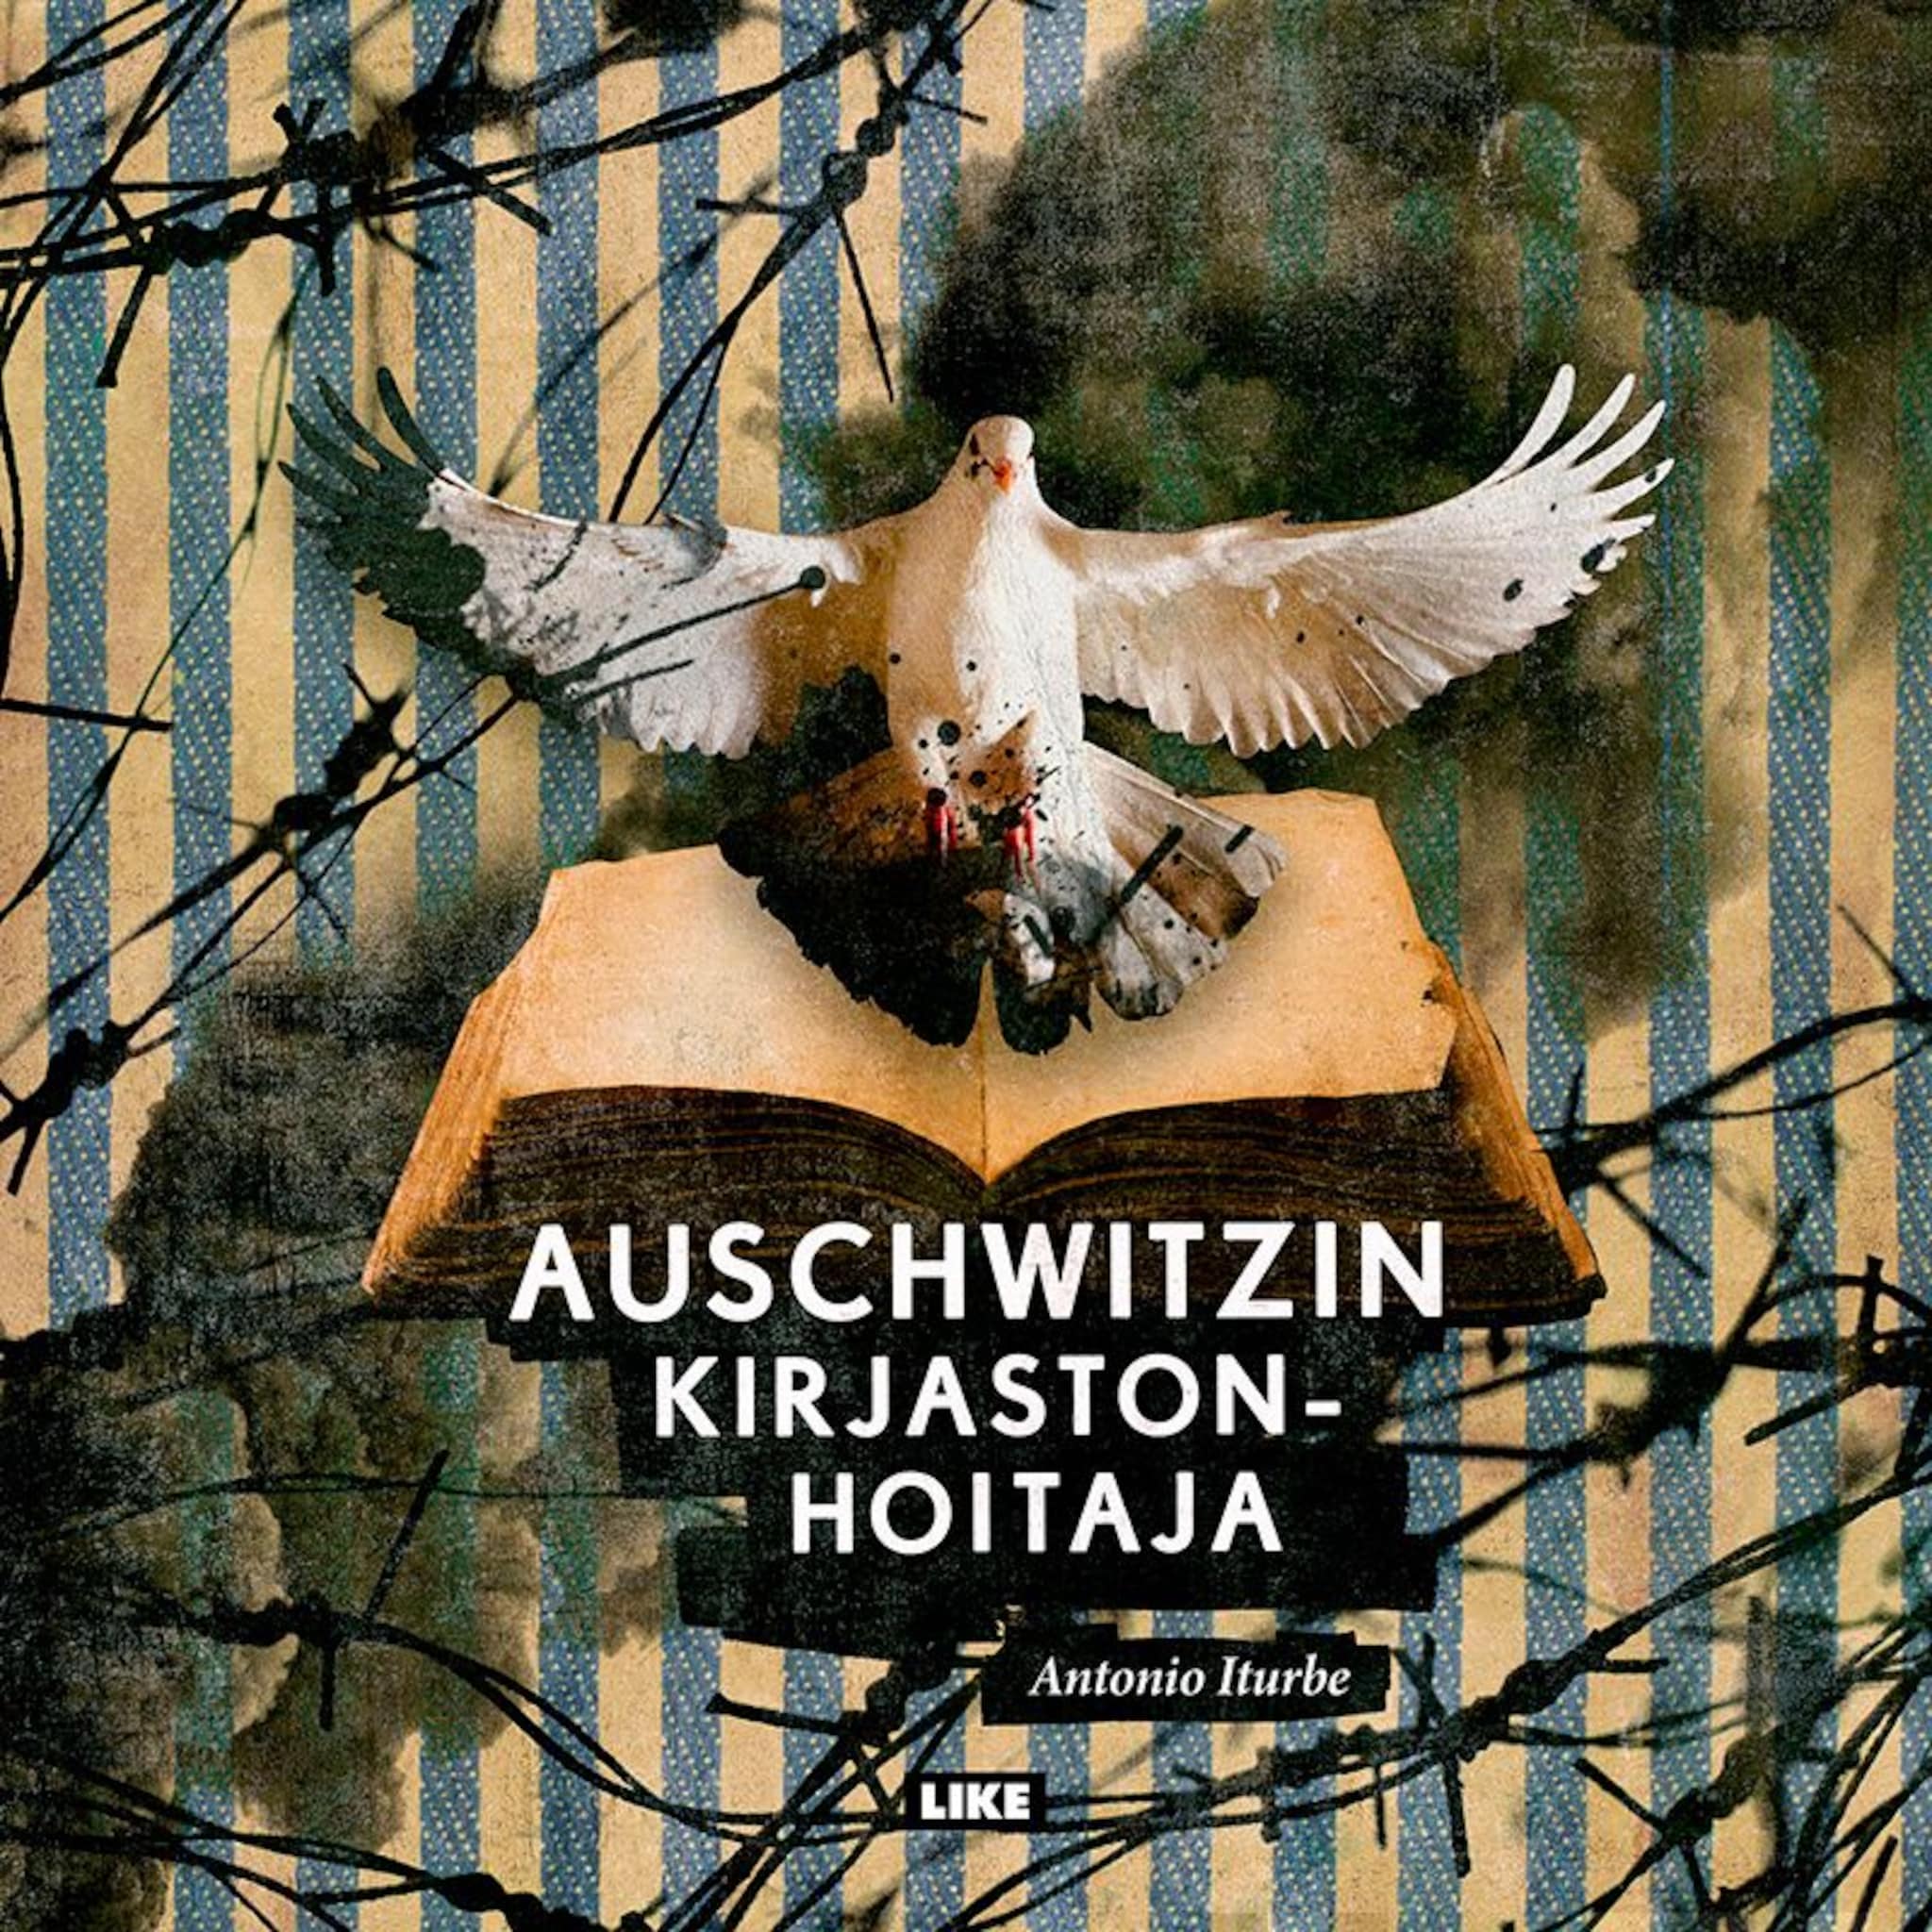 Auschwitzin kirjastonhoitaja ilmaiseksi